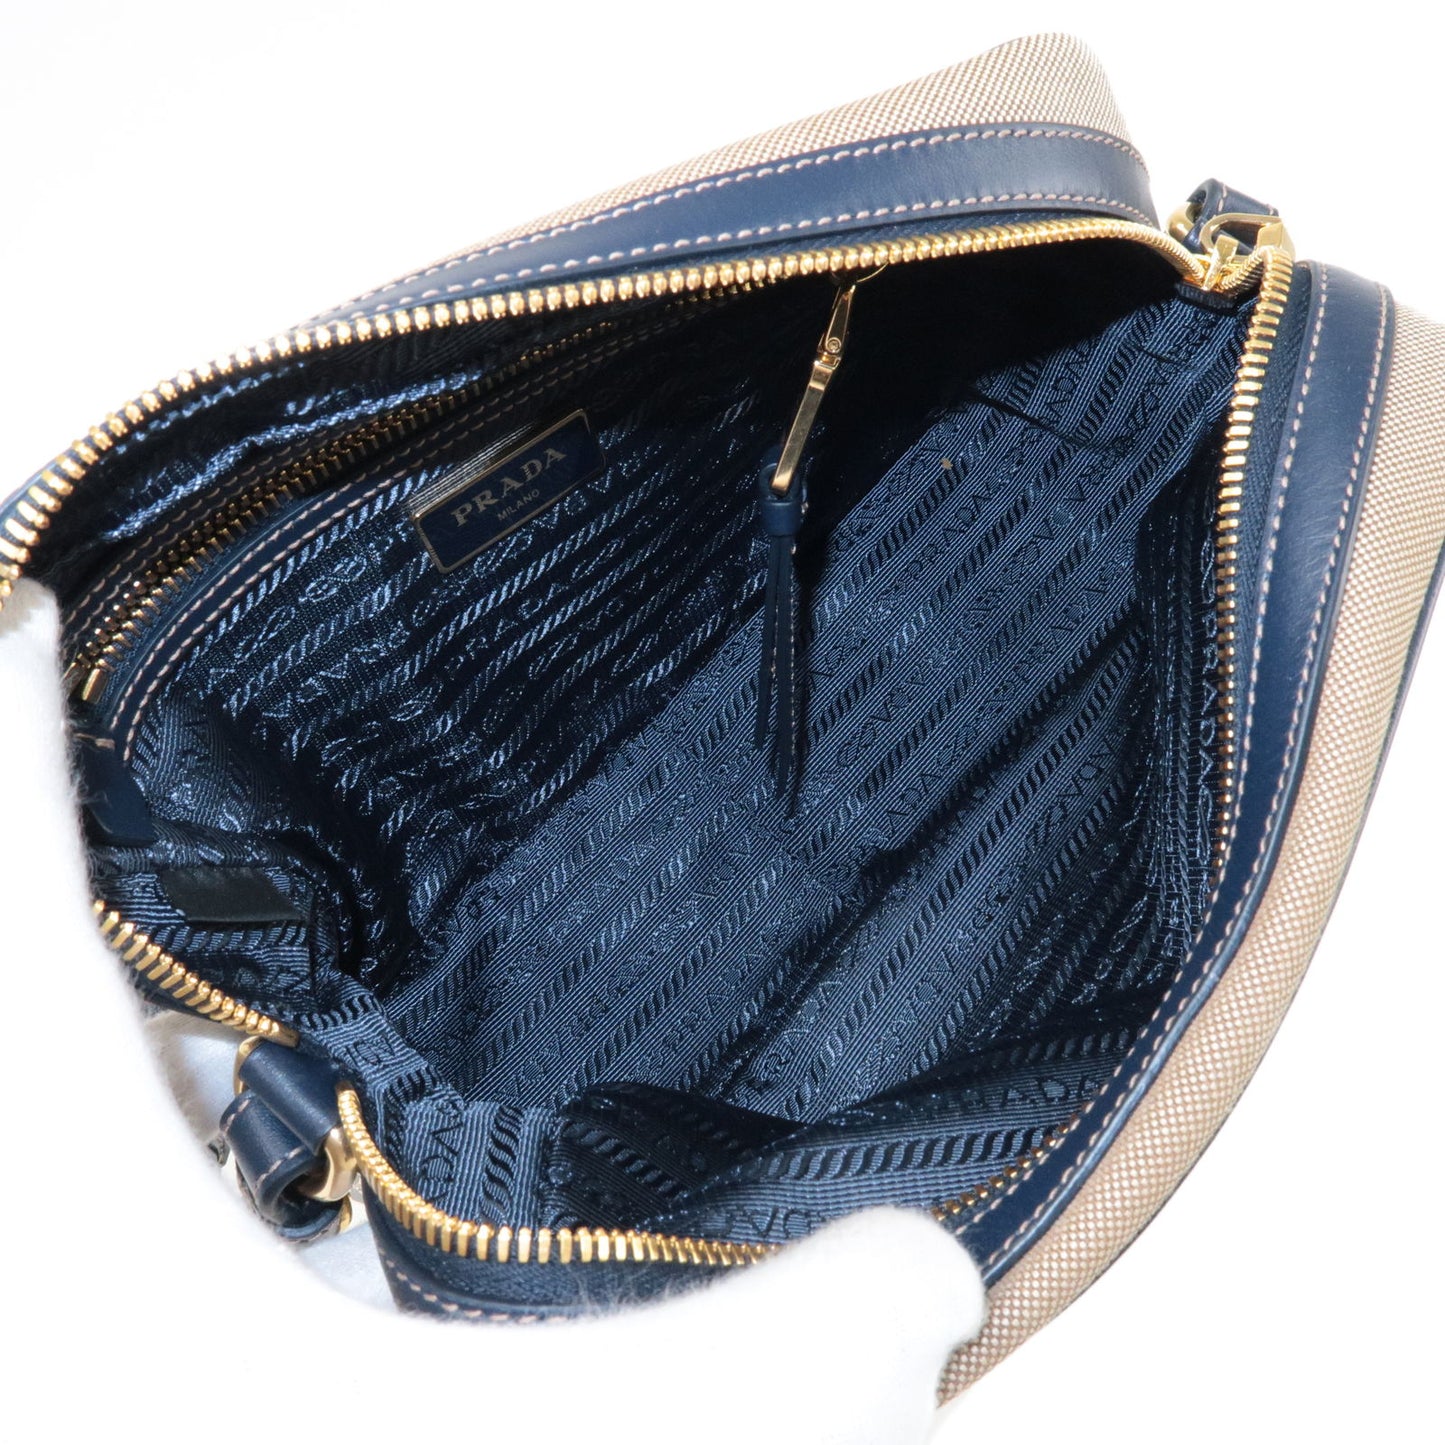 PRADA Logo Jacquard Leather Shoulder Bag Beige Navy 1BH089